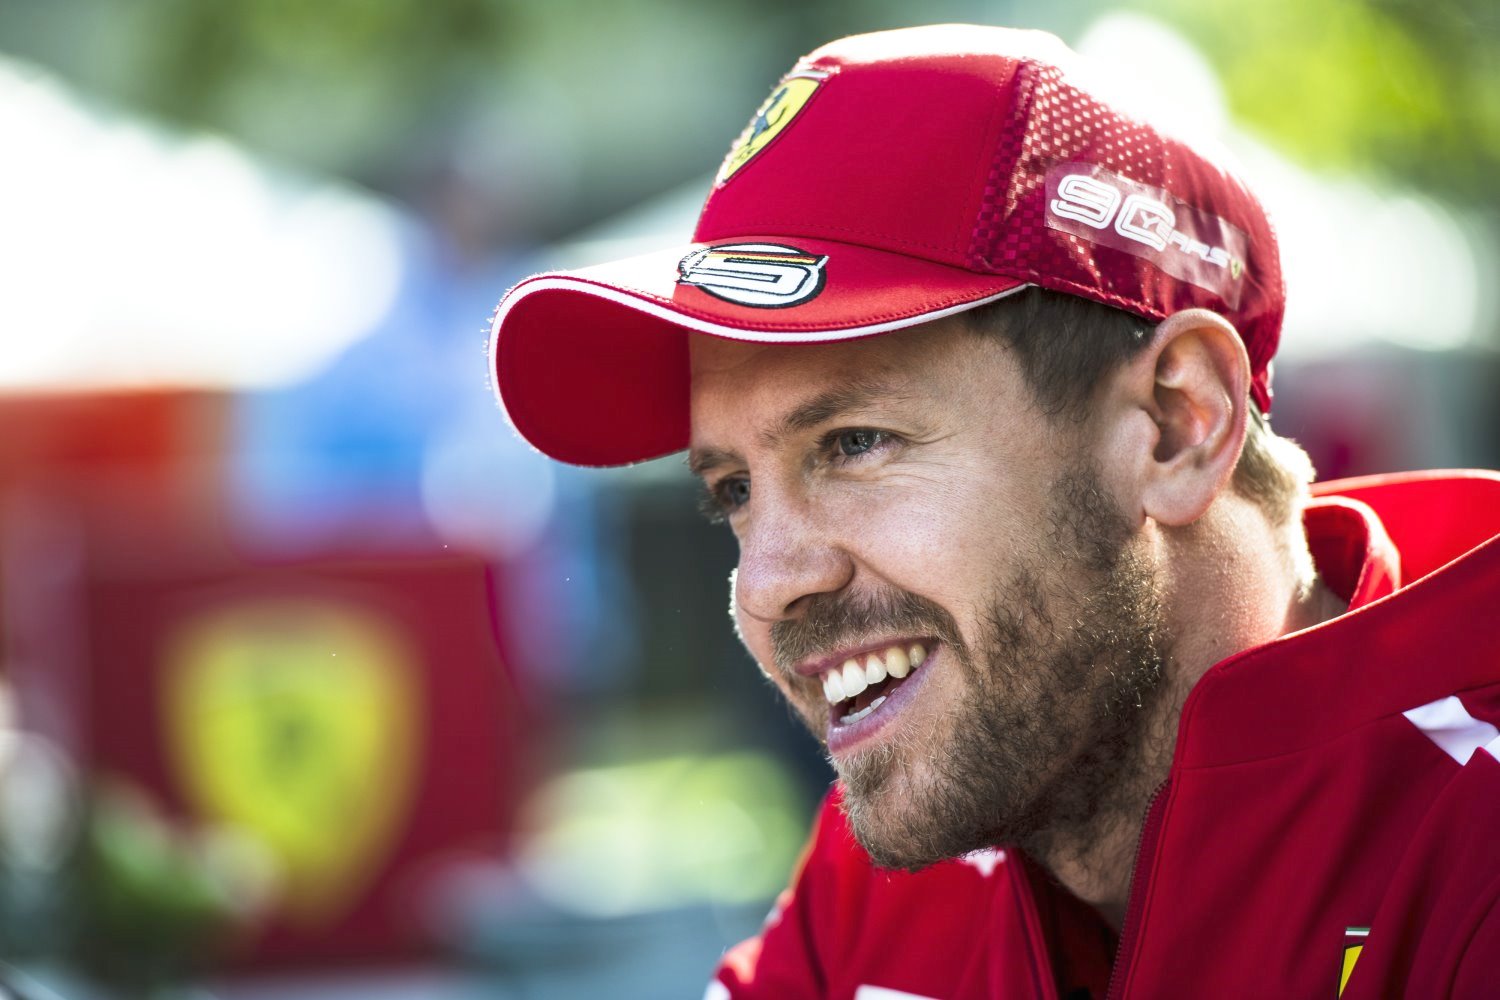 Vettel calls Verstappen immature